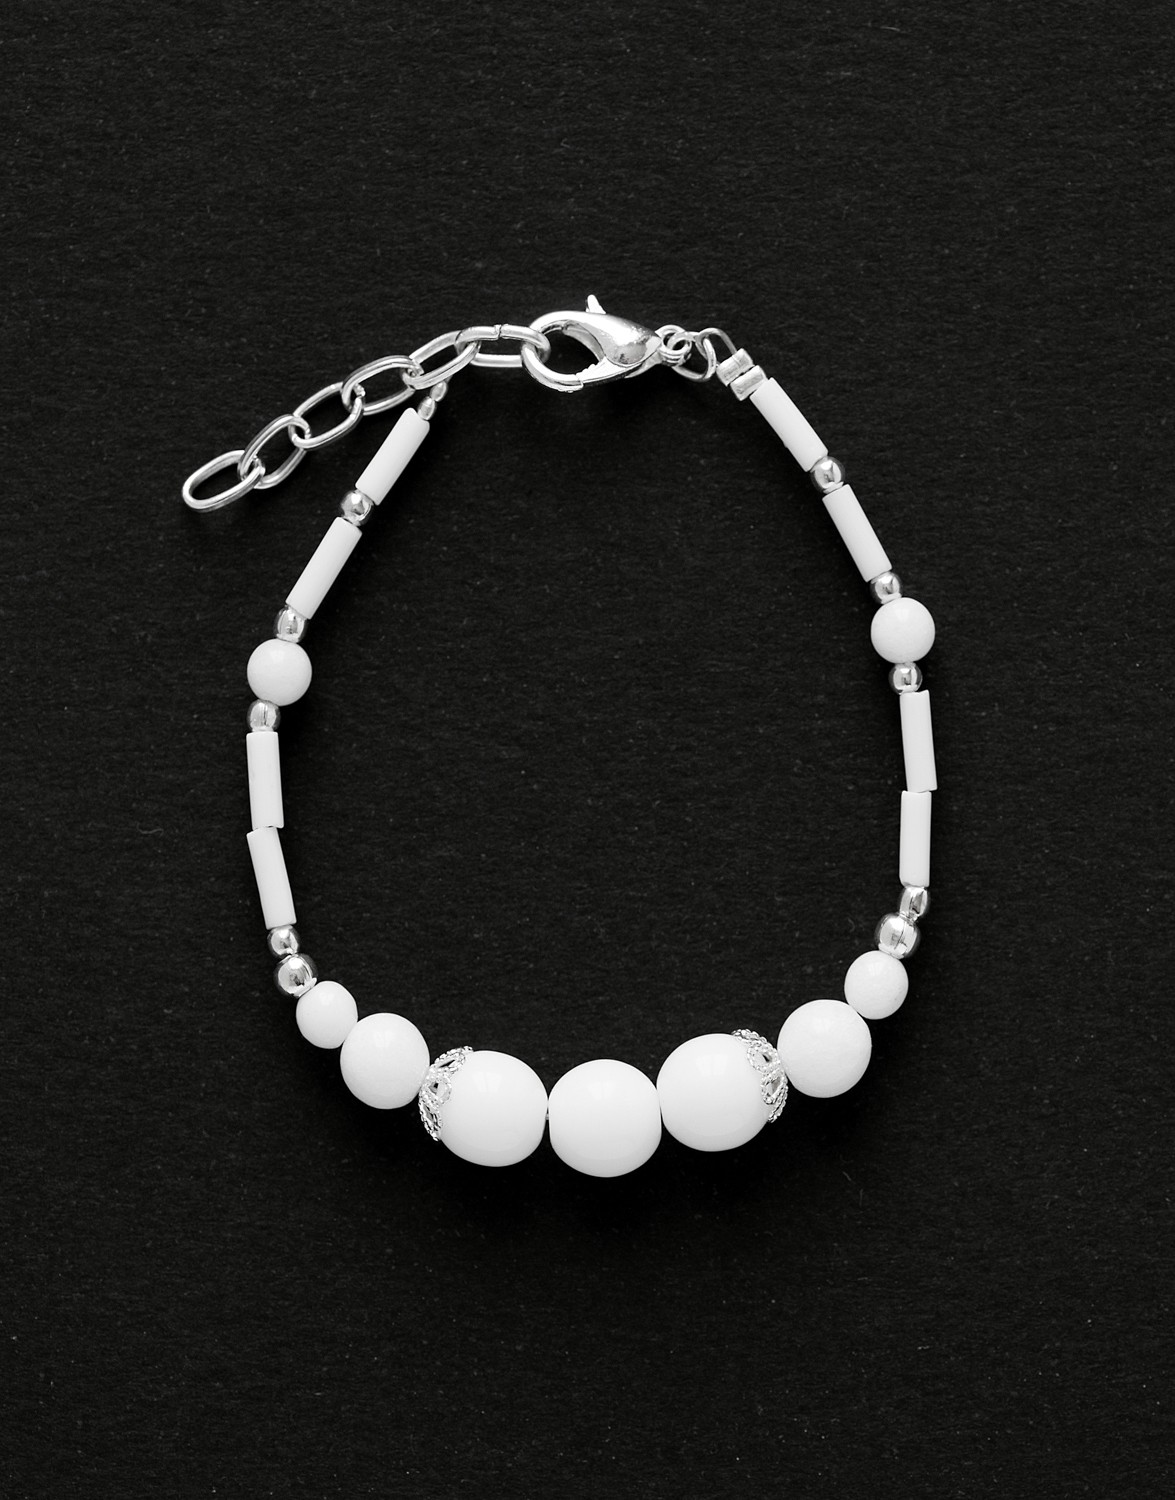 Bracelet Calliope Thalia white Onyx